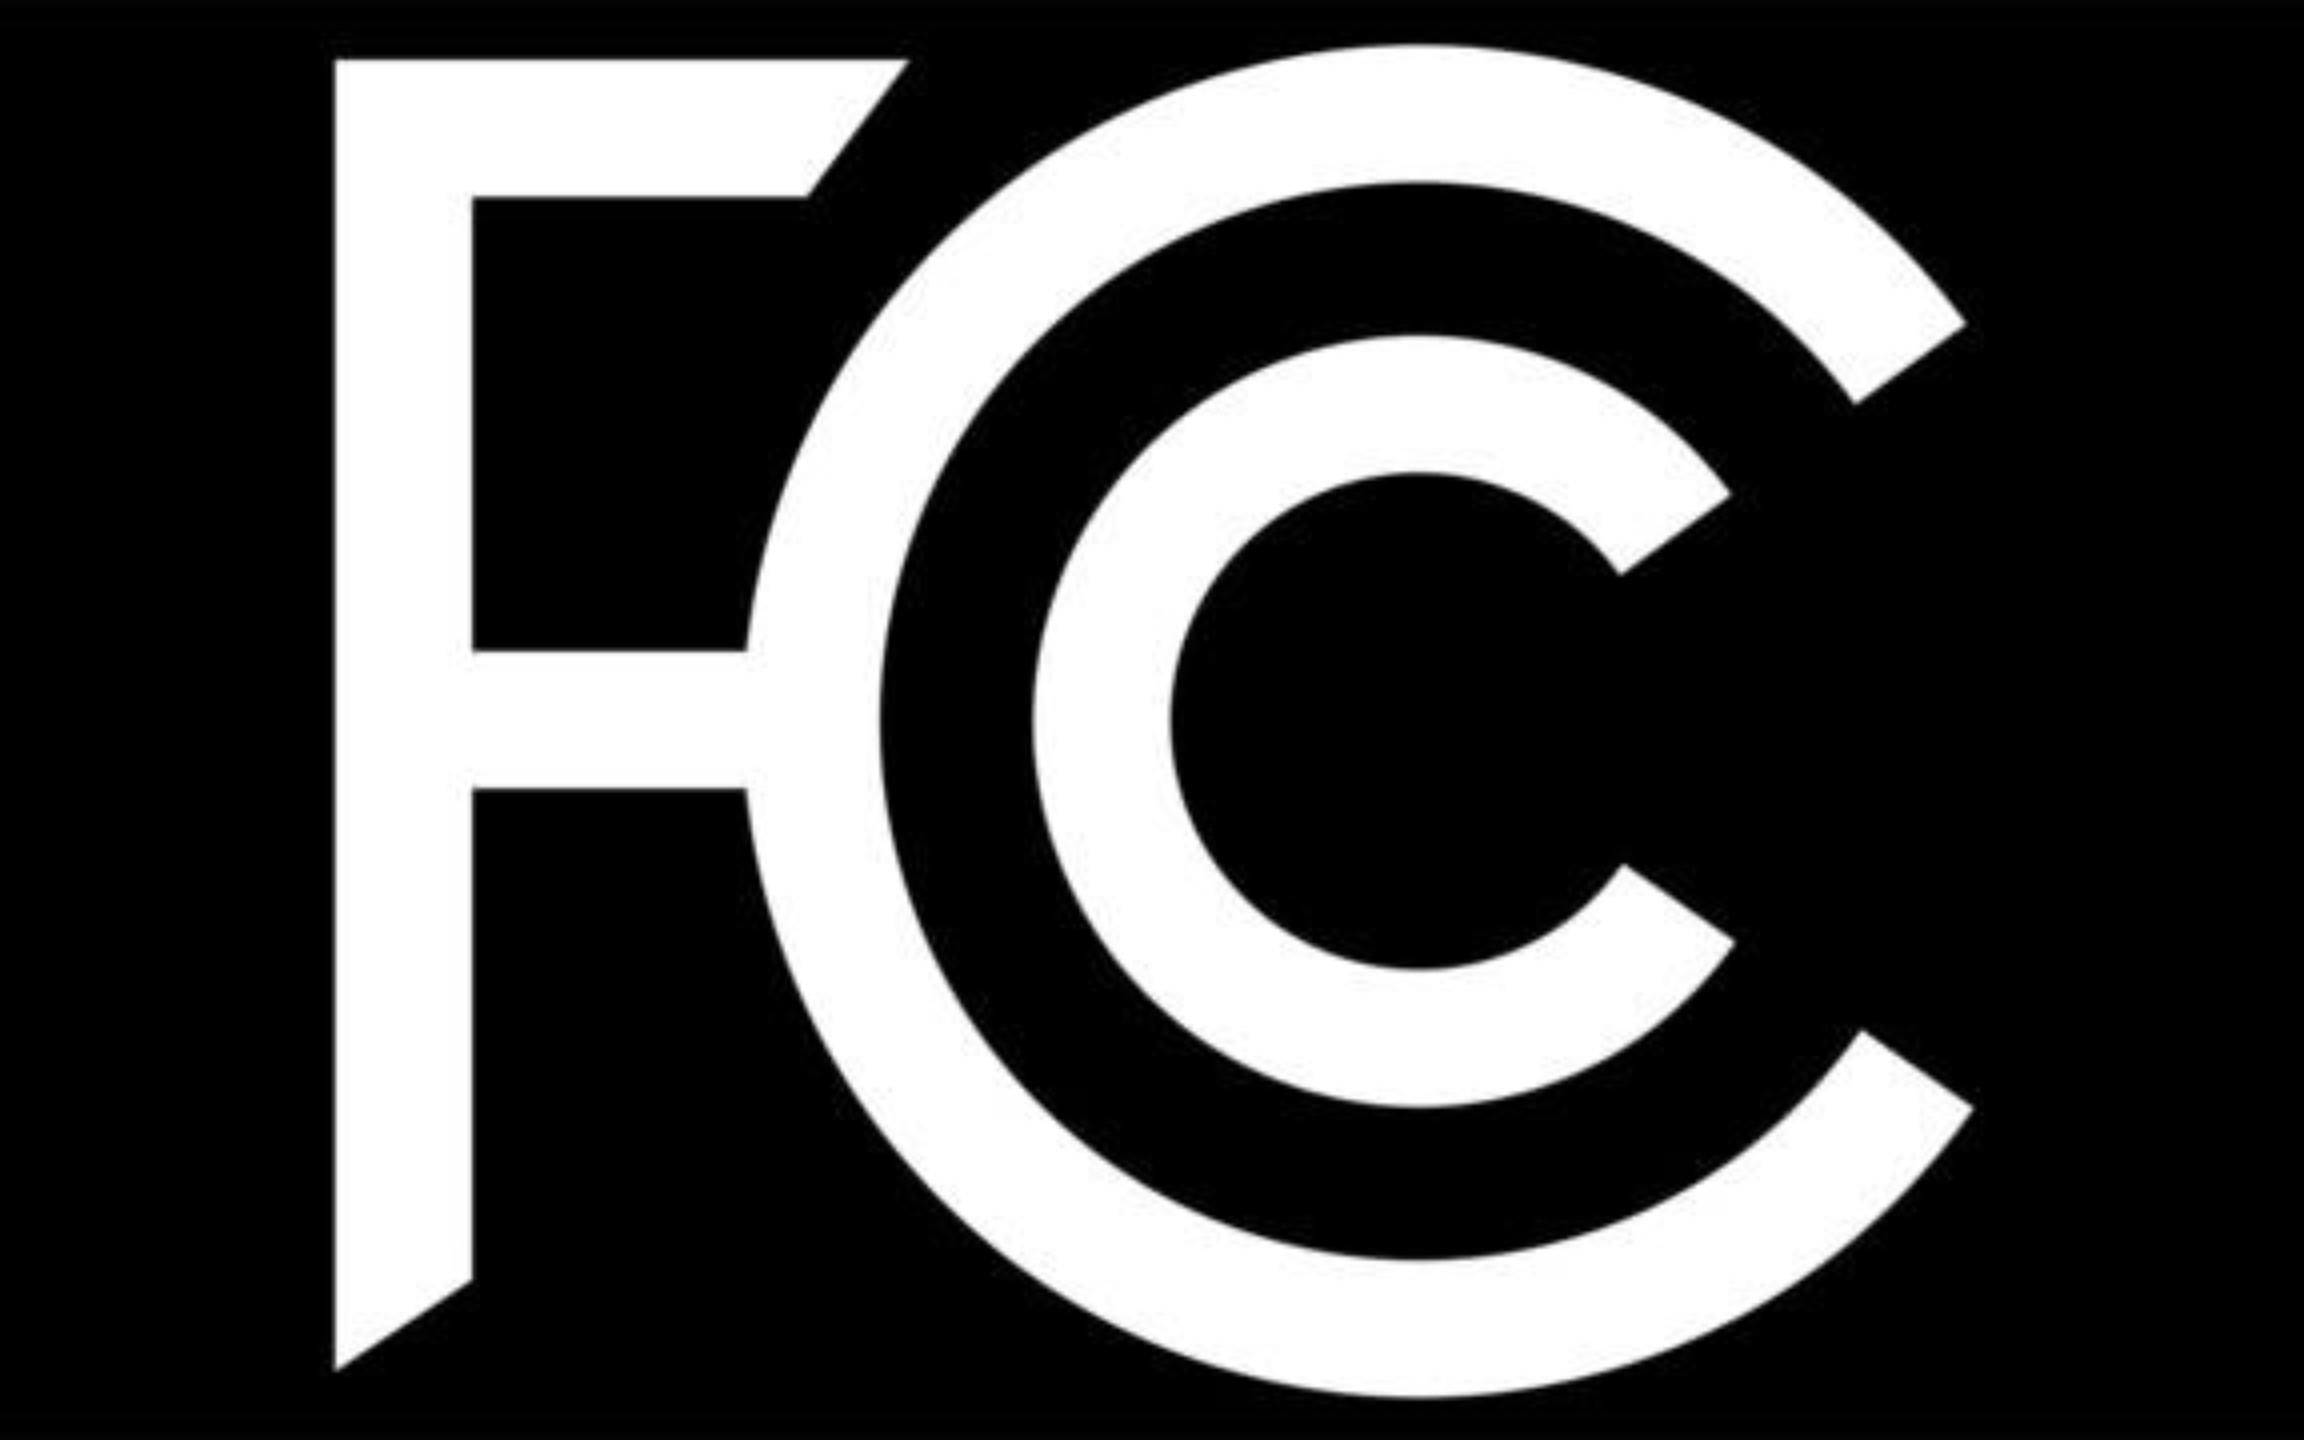 FCC认证图标图片